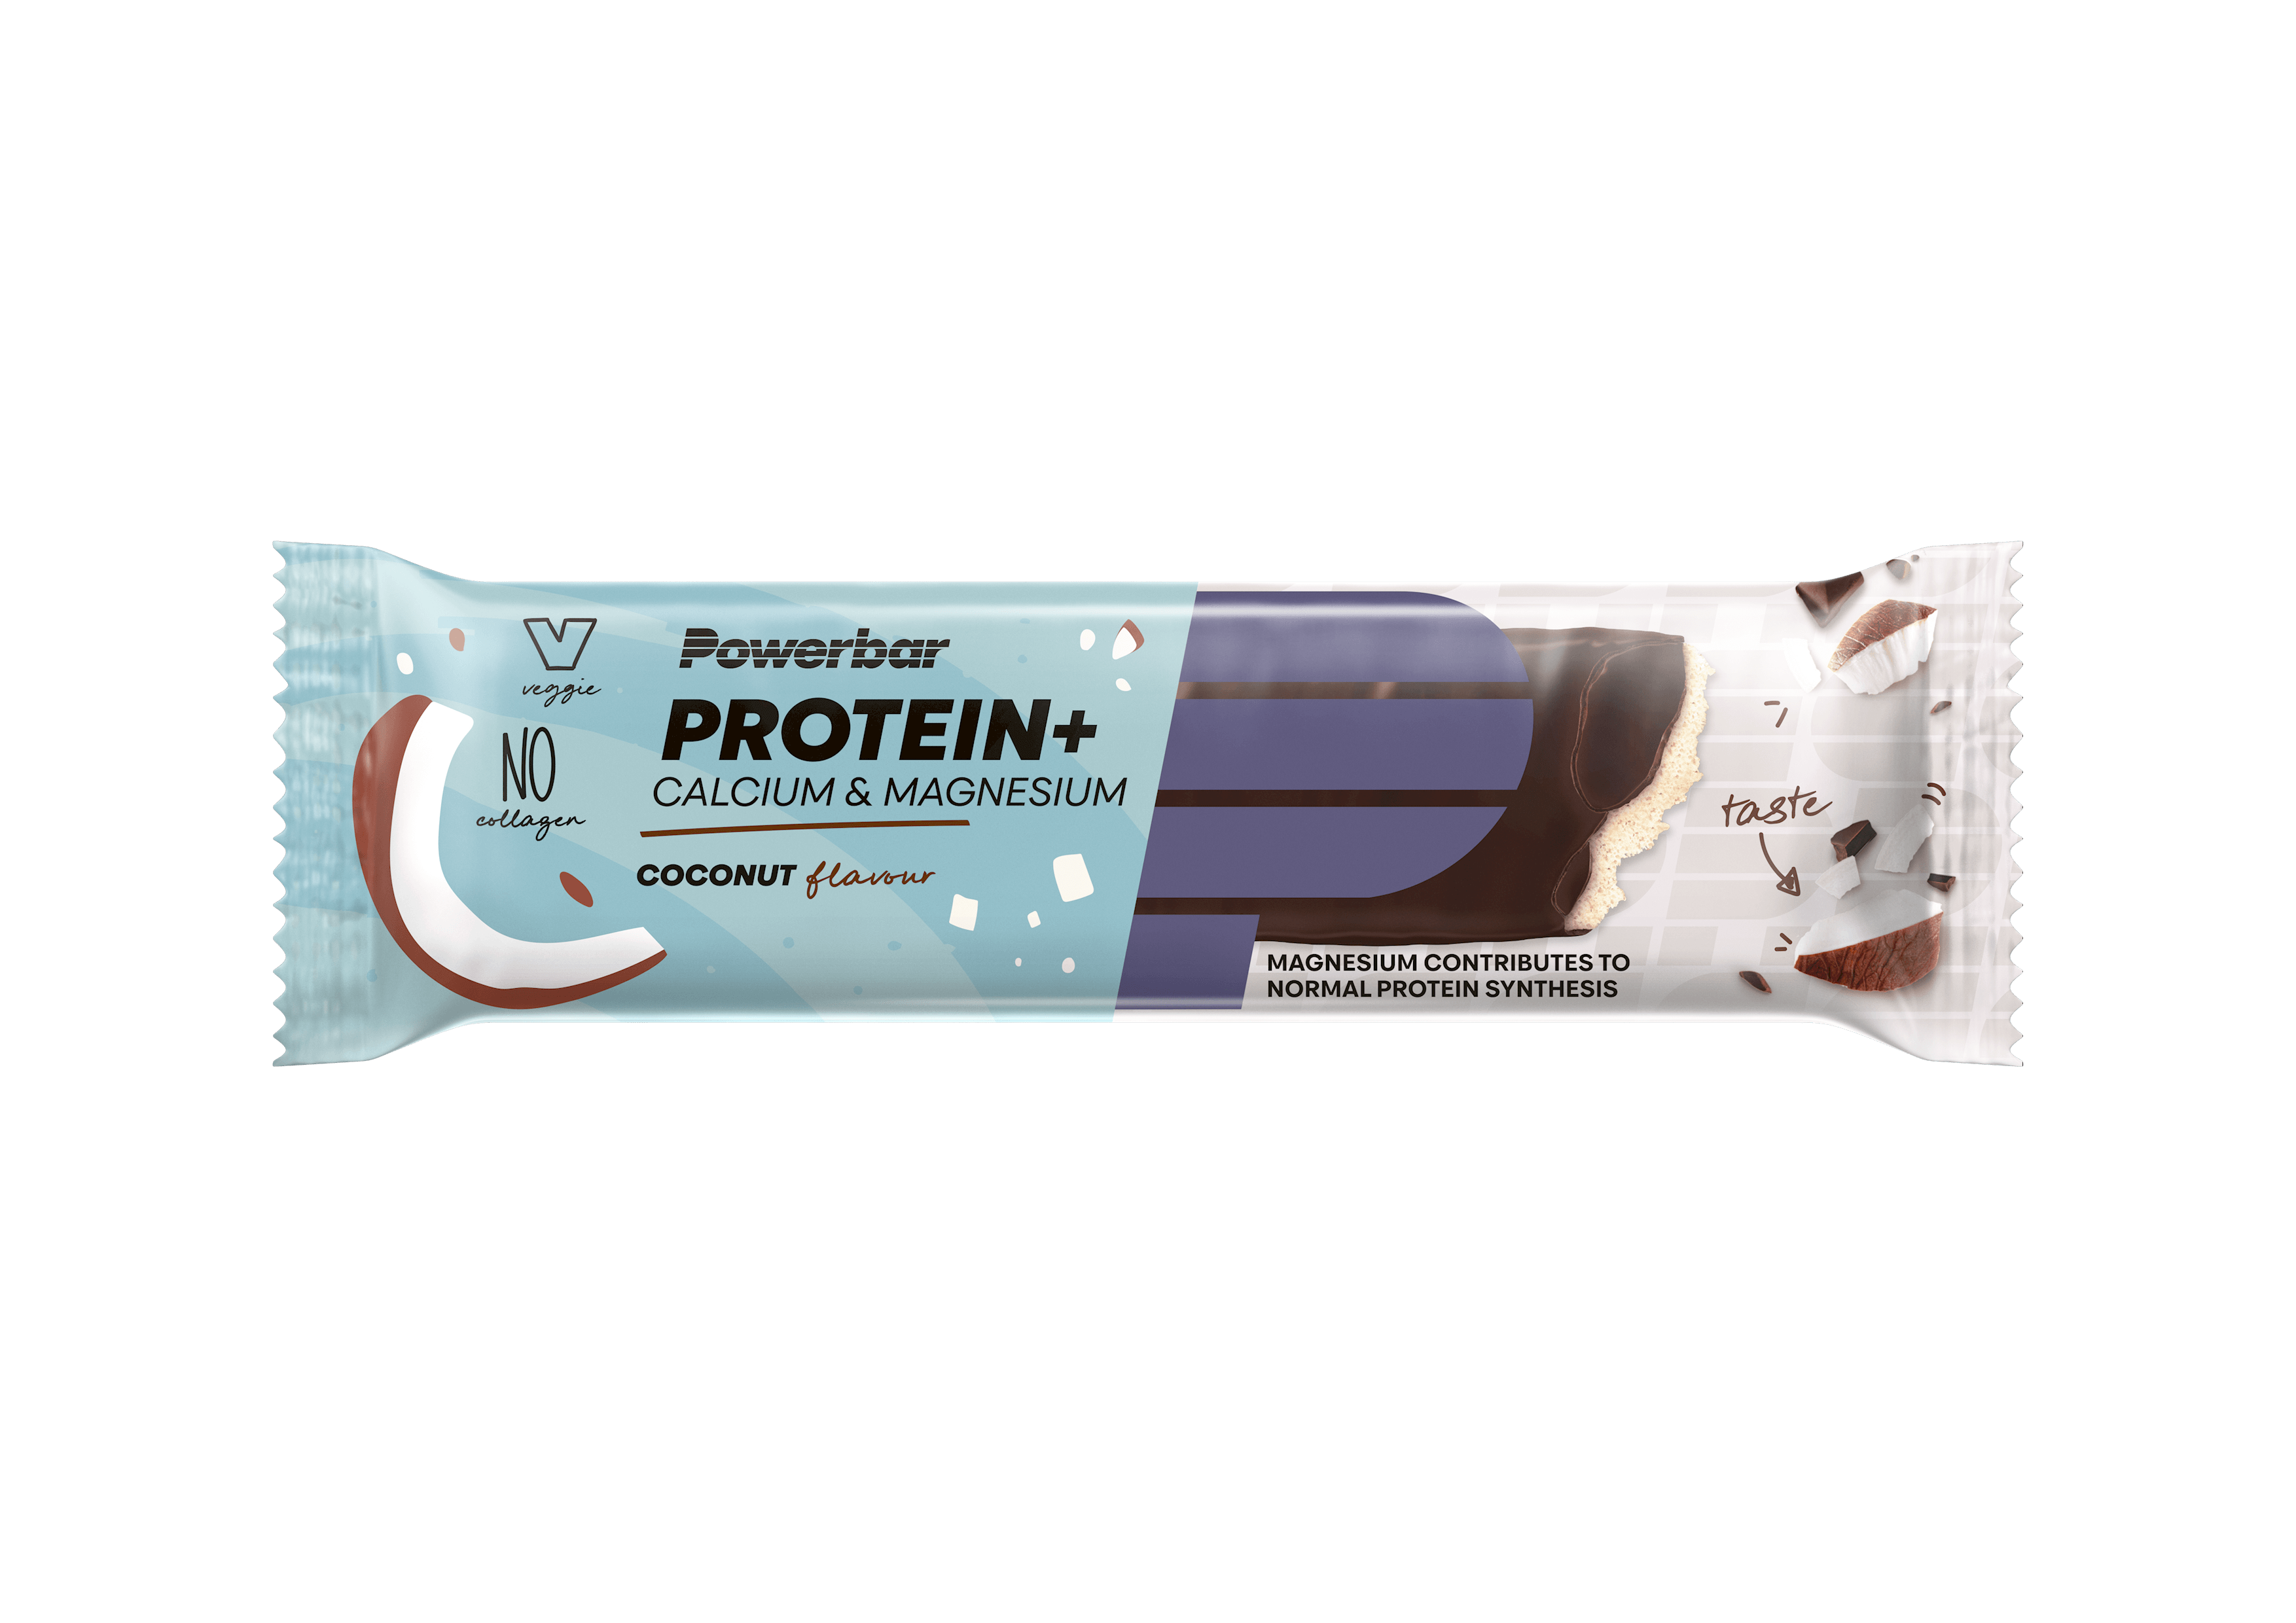 Protein Plus Calcium & Magnesium